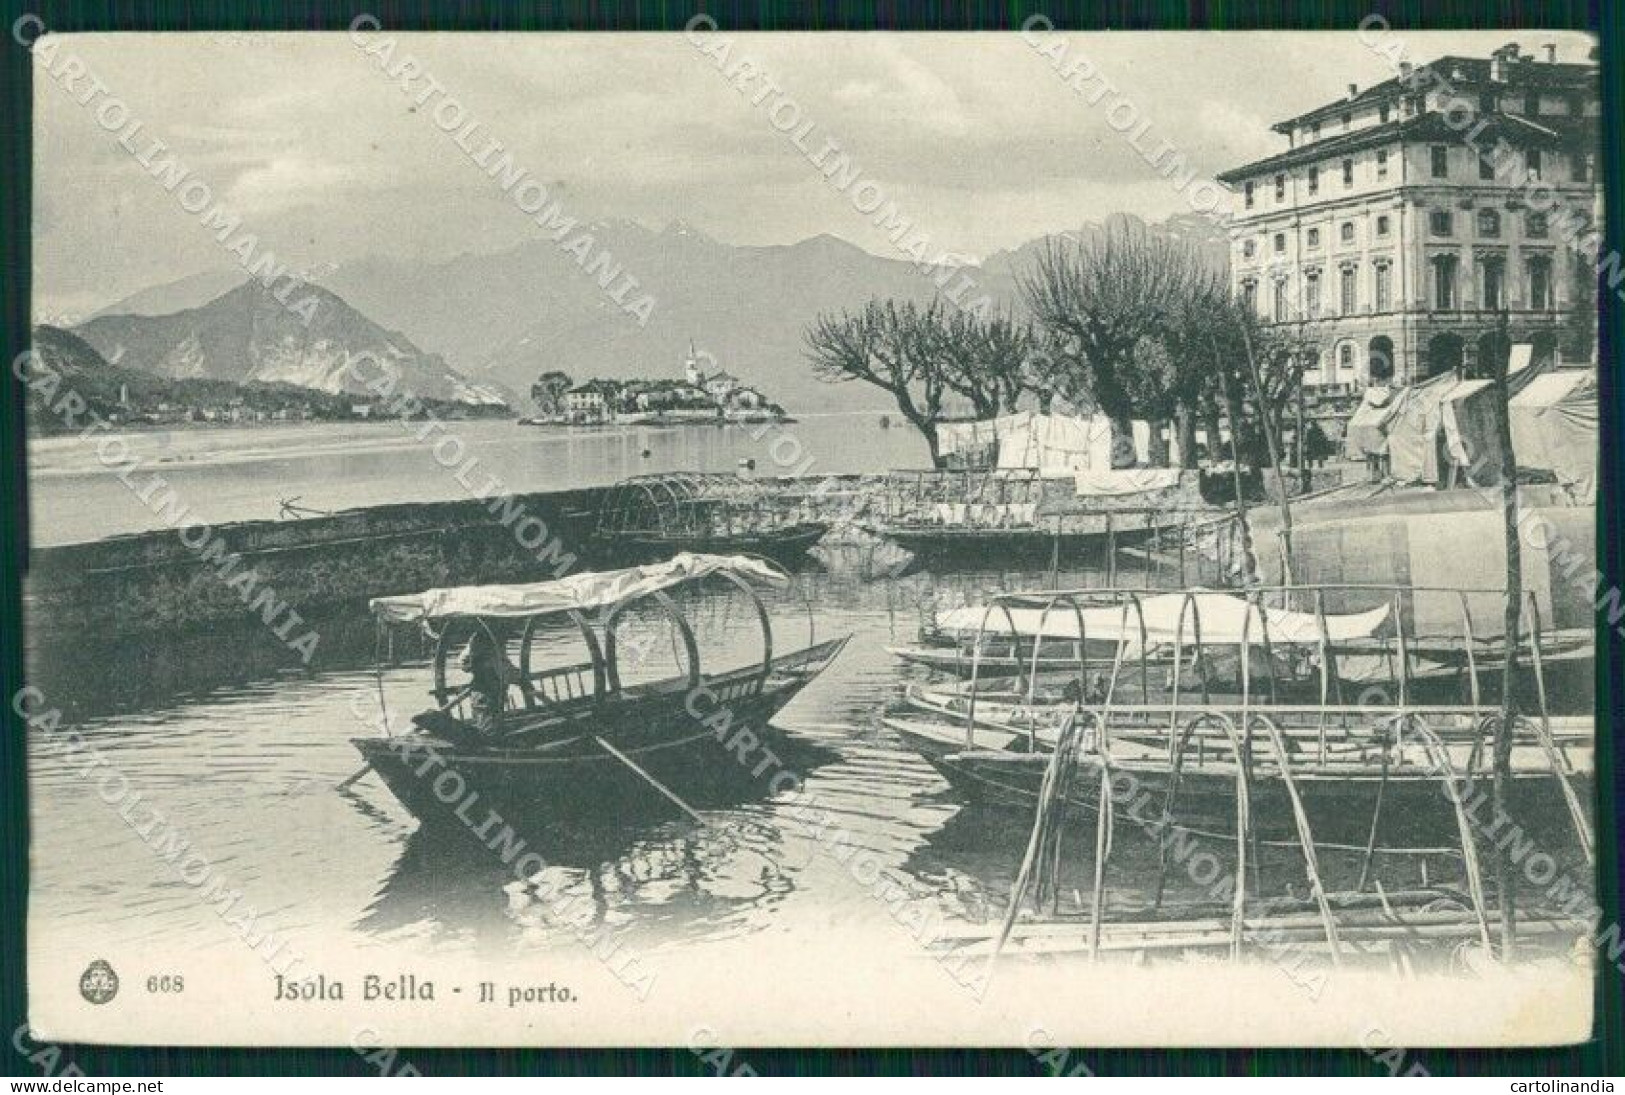 Verbania Stresa Isola Bella Lago Maggiore Barche Cartolina MT0916 - Verbania